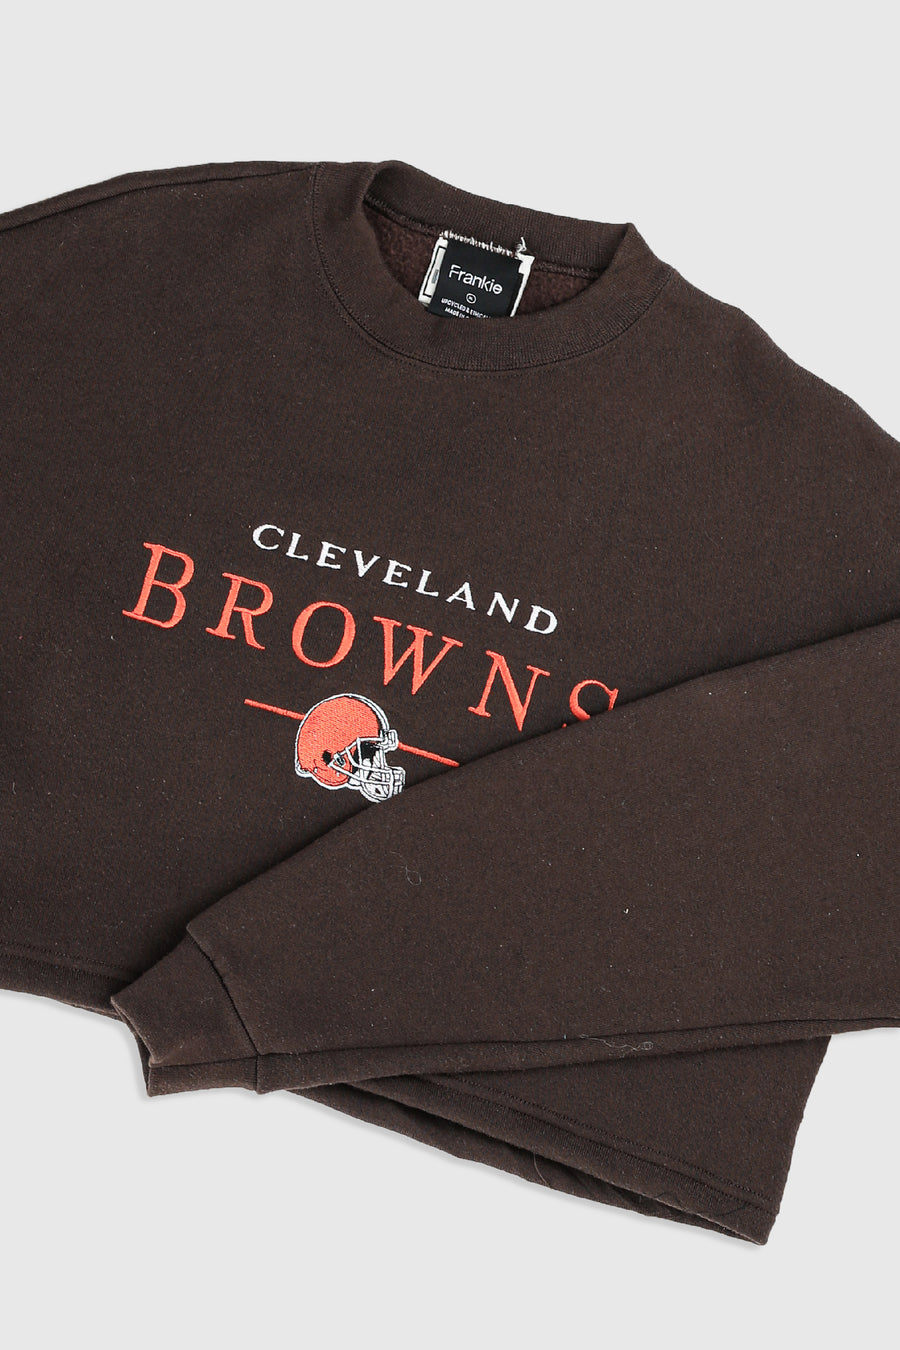 Rework Cleveland Browns Crop Sweatshirt - XL